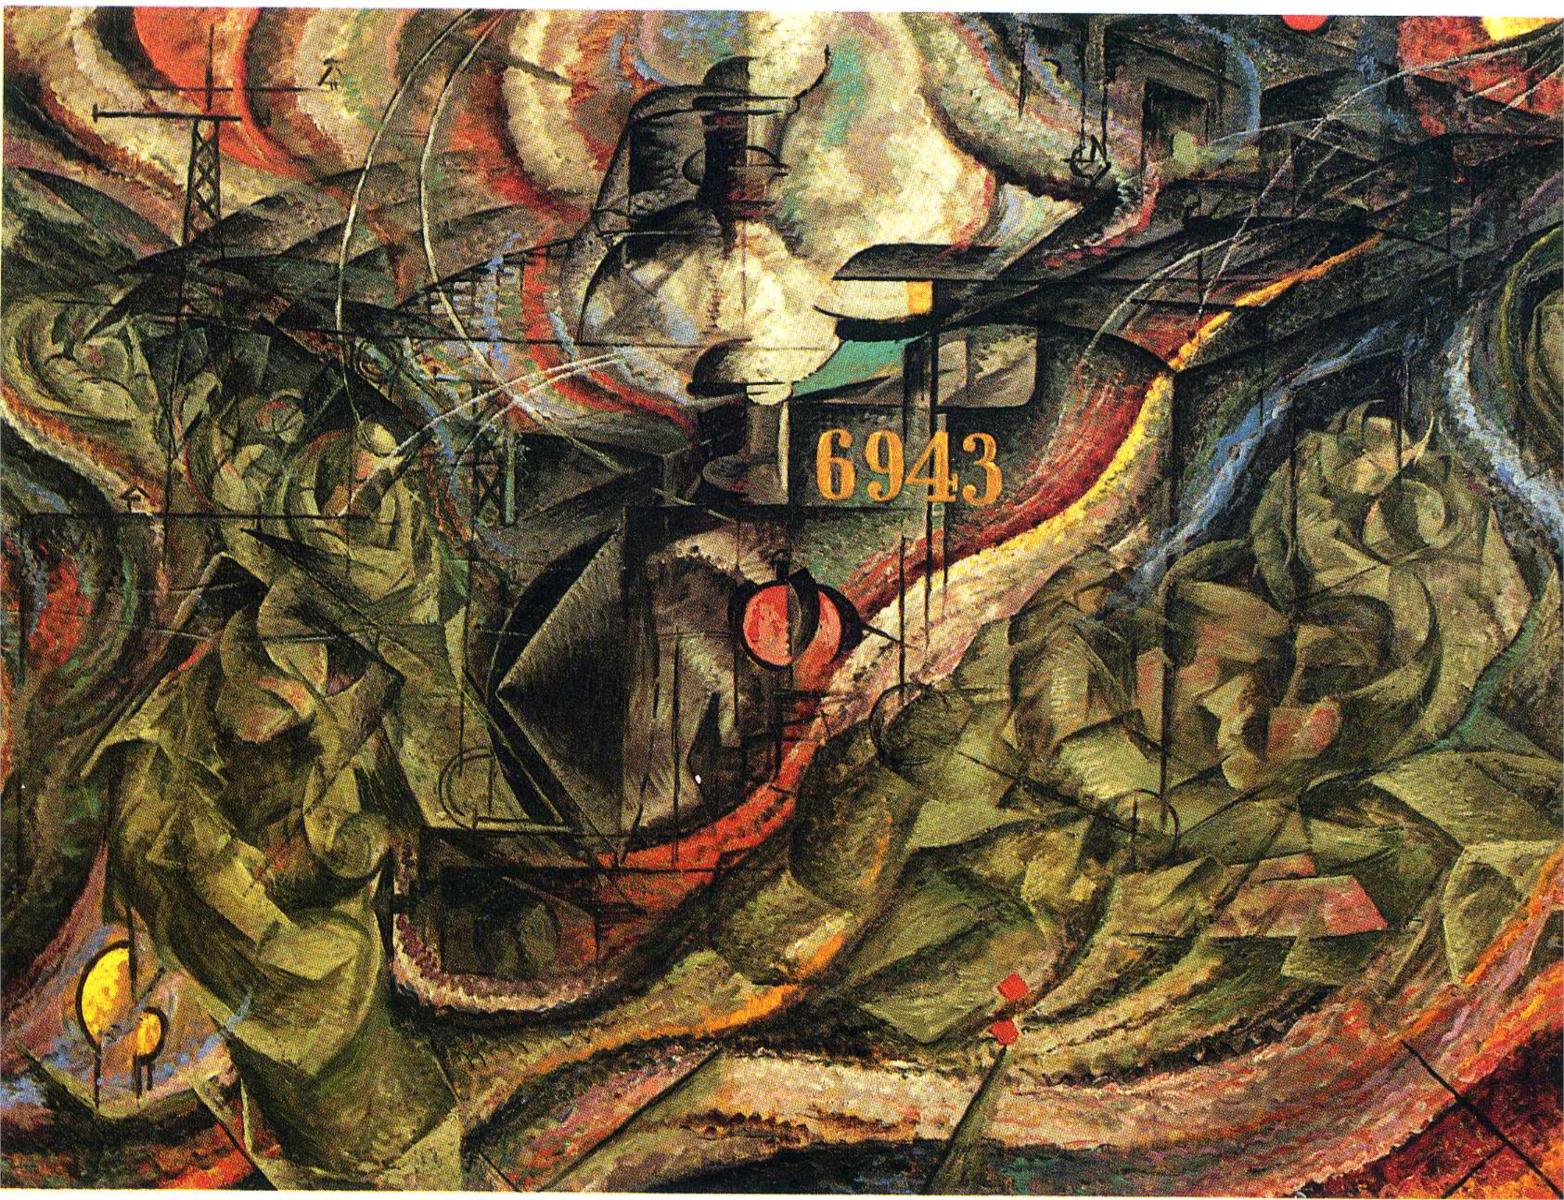 Estados de la mente I: Las despedidas by Umberto Boccioni - 1911 Museum of Modern Art